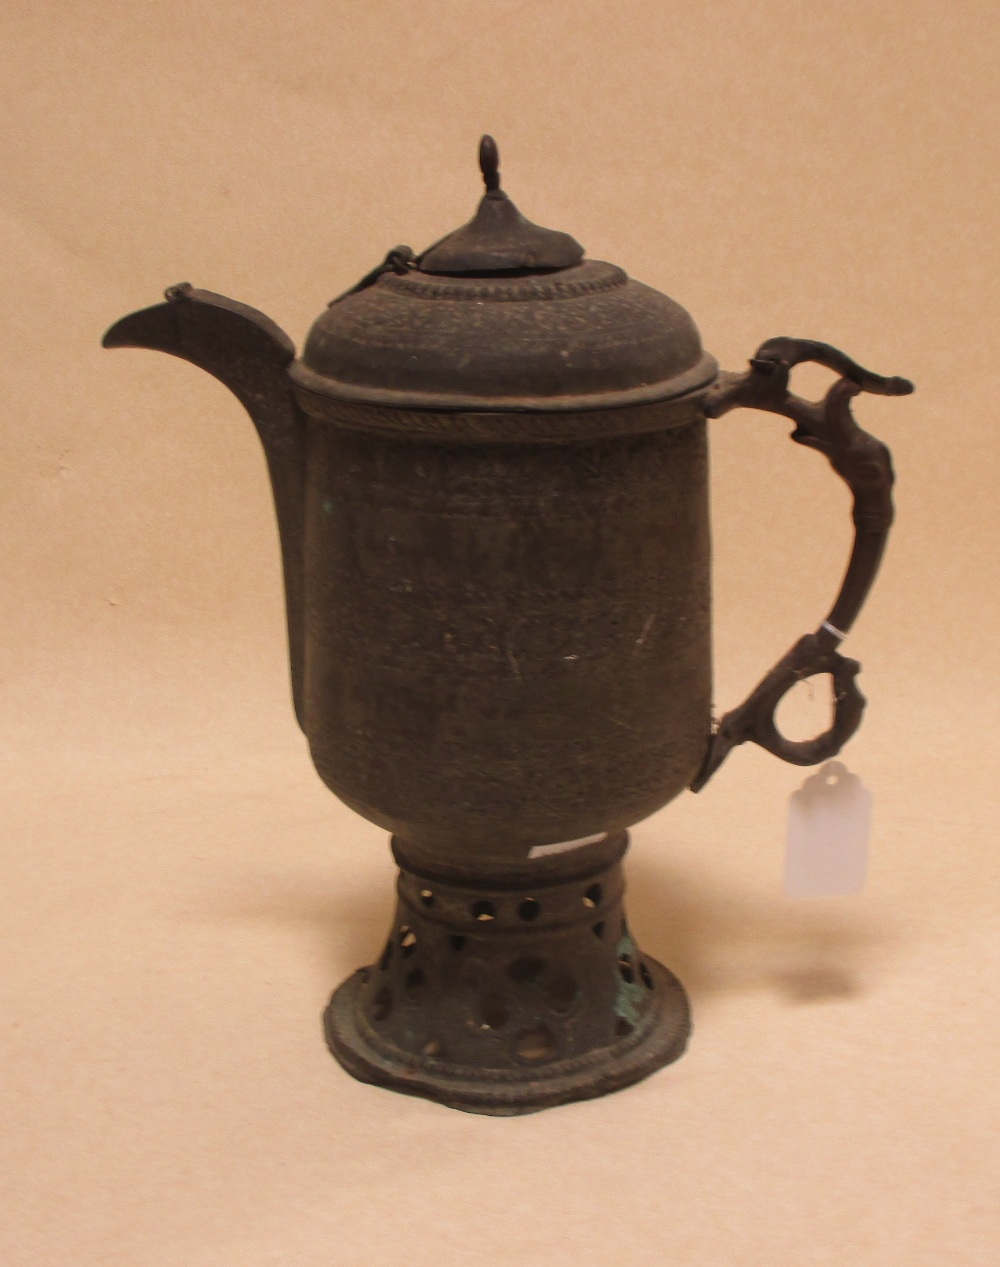 An Eastern brass coffee pot